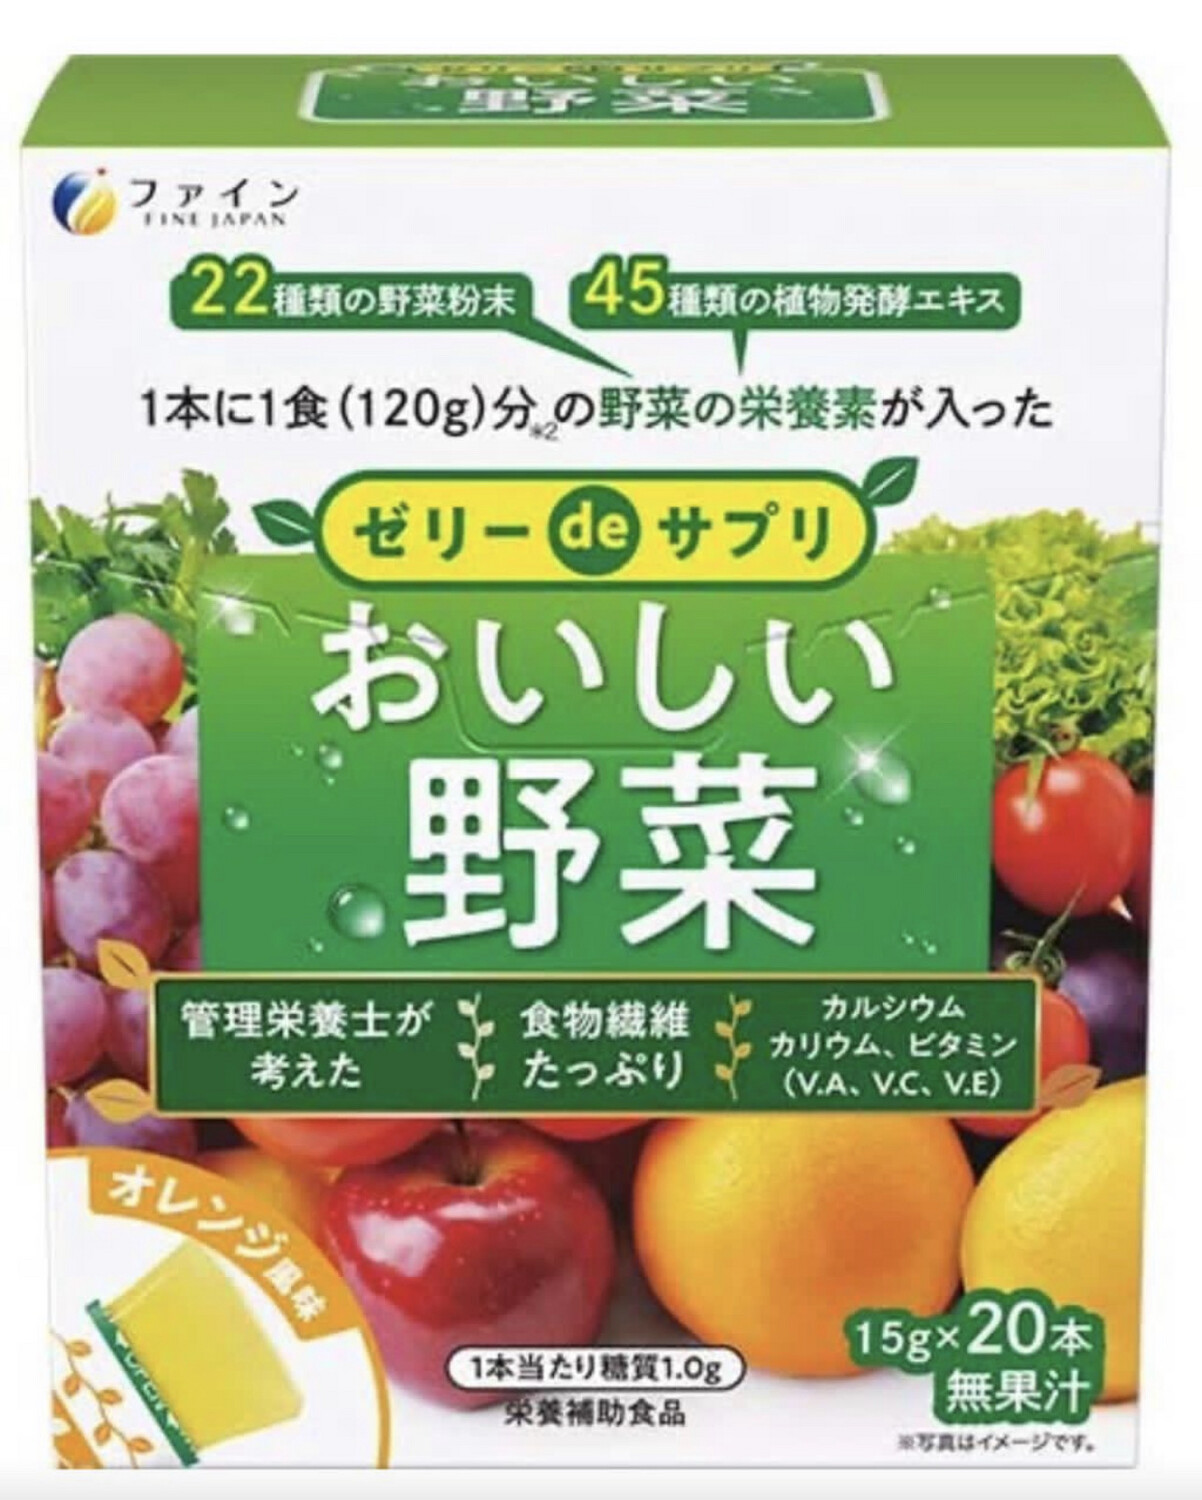 Витаминное желе с пищевыми волокнами и растительными экстрактами FINE JAPAN Jelly de Supplement Delicious